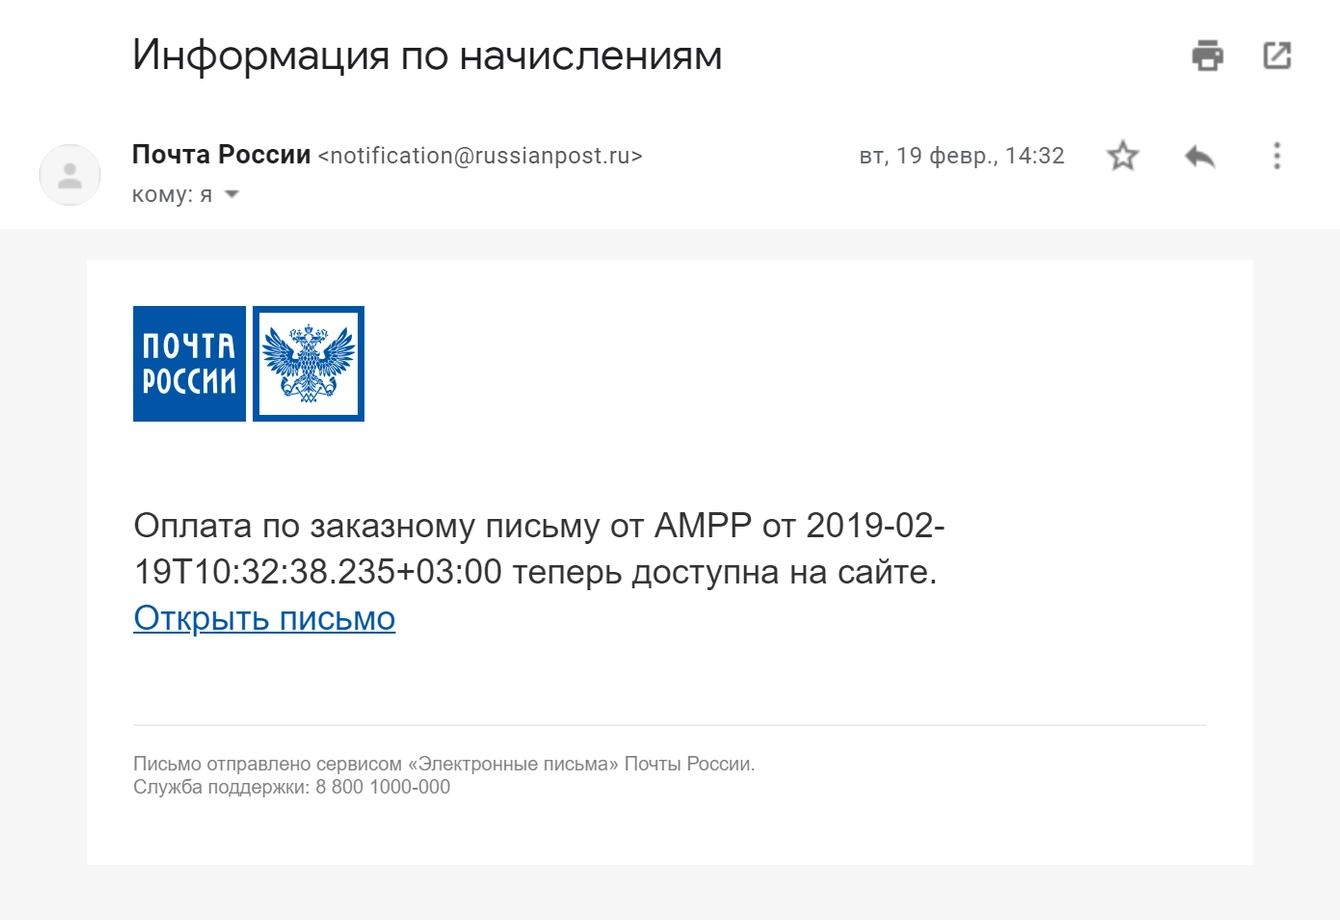 Ссылка на оплату штрафа через сервис Почты России